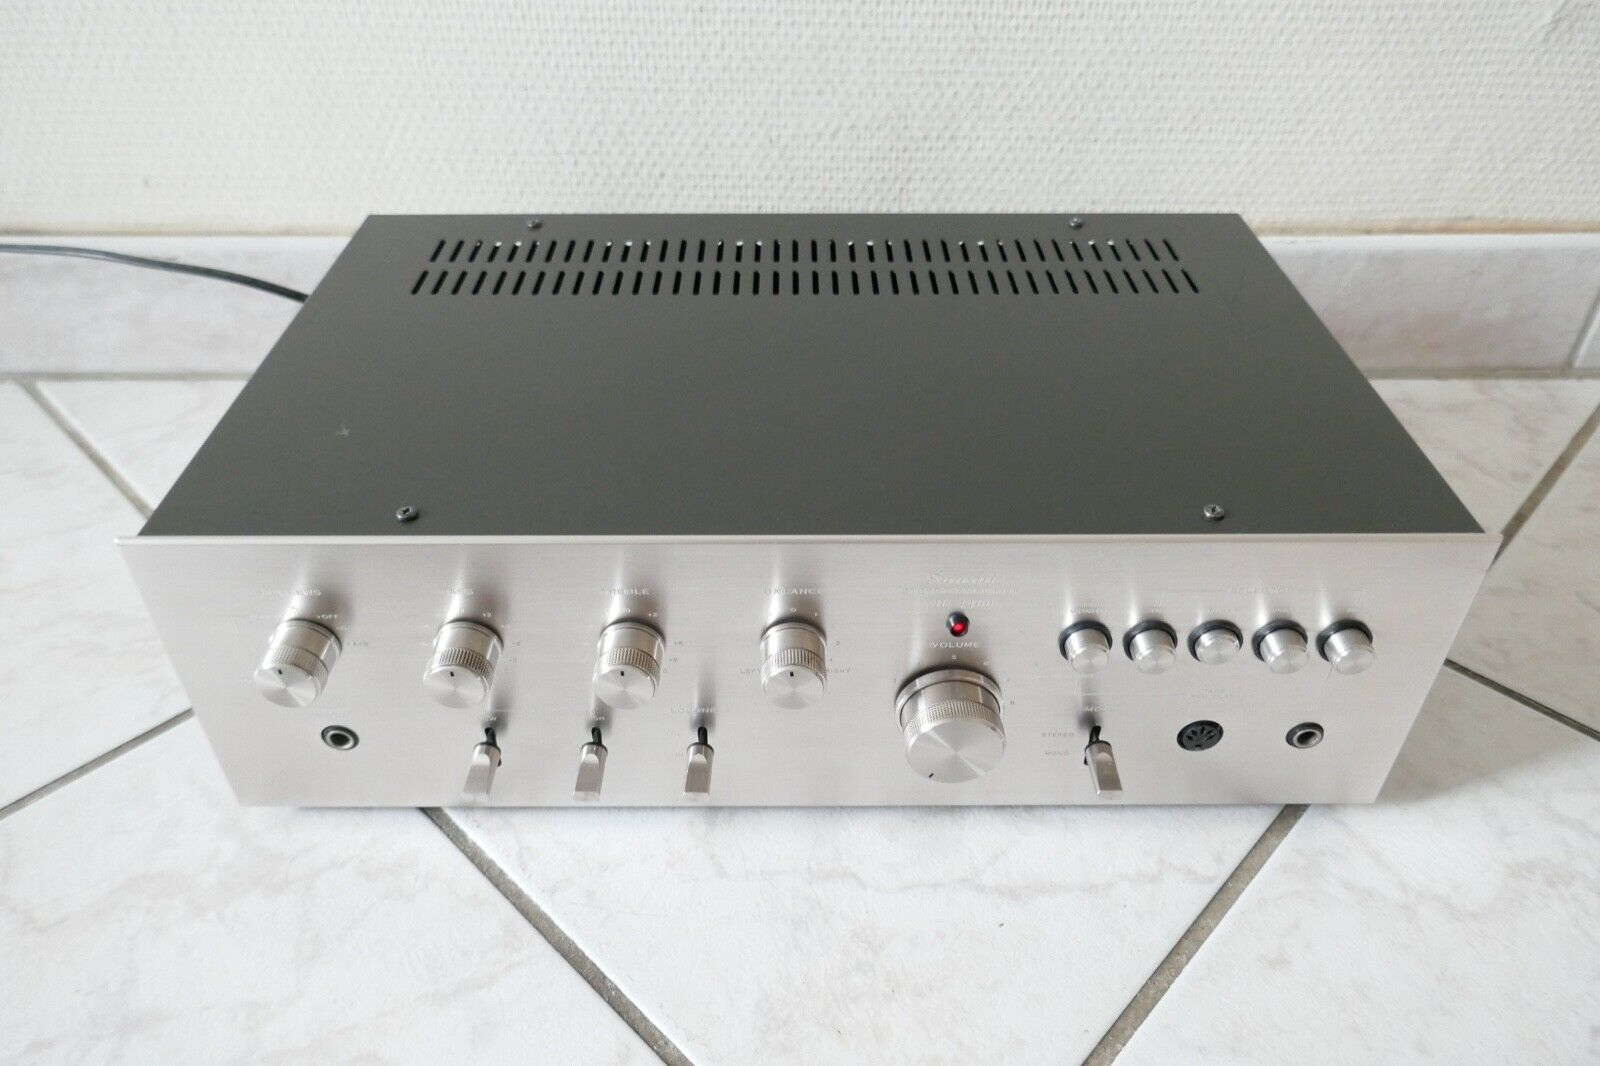 amplificateur amplifier sansui au-4400 vintage occasion